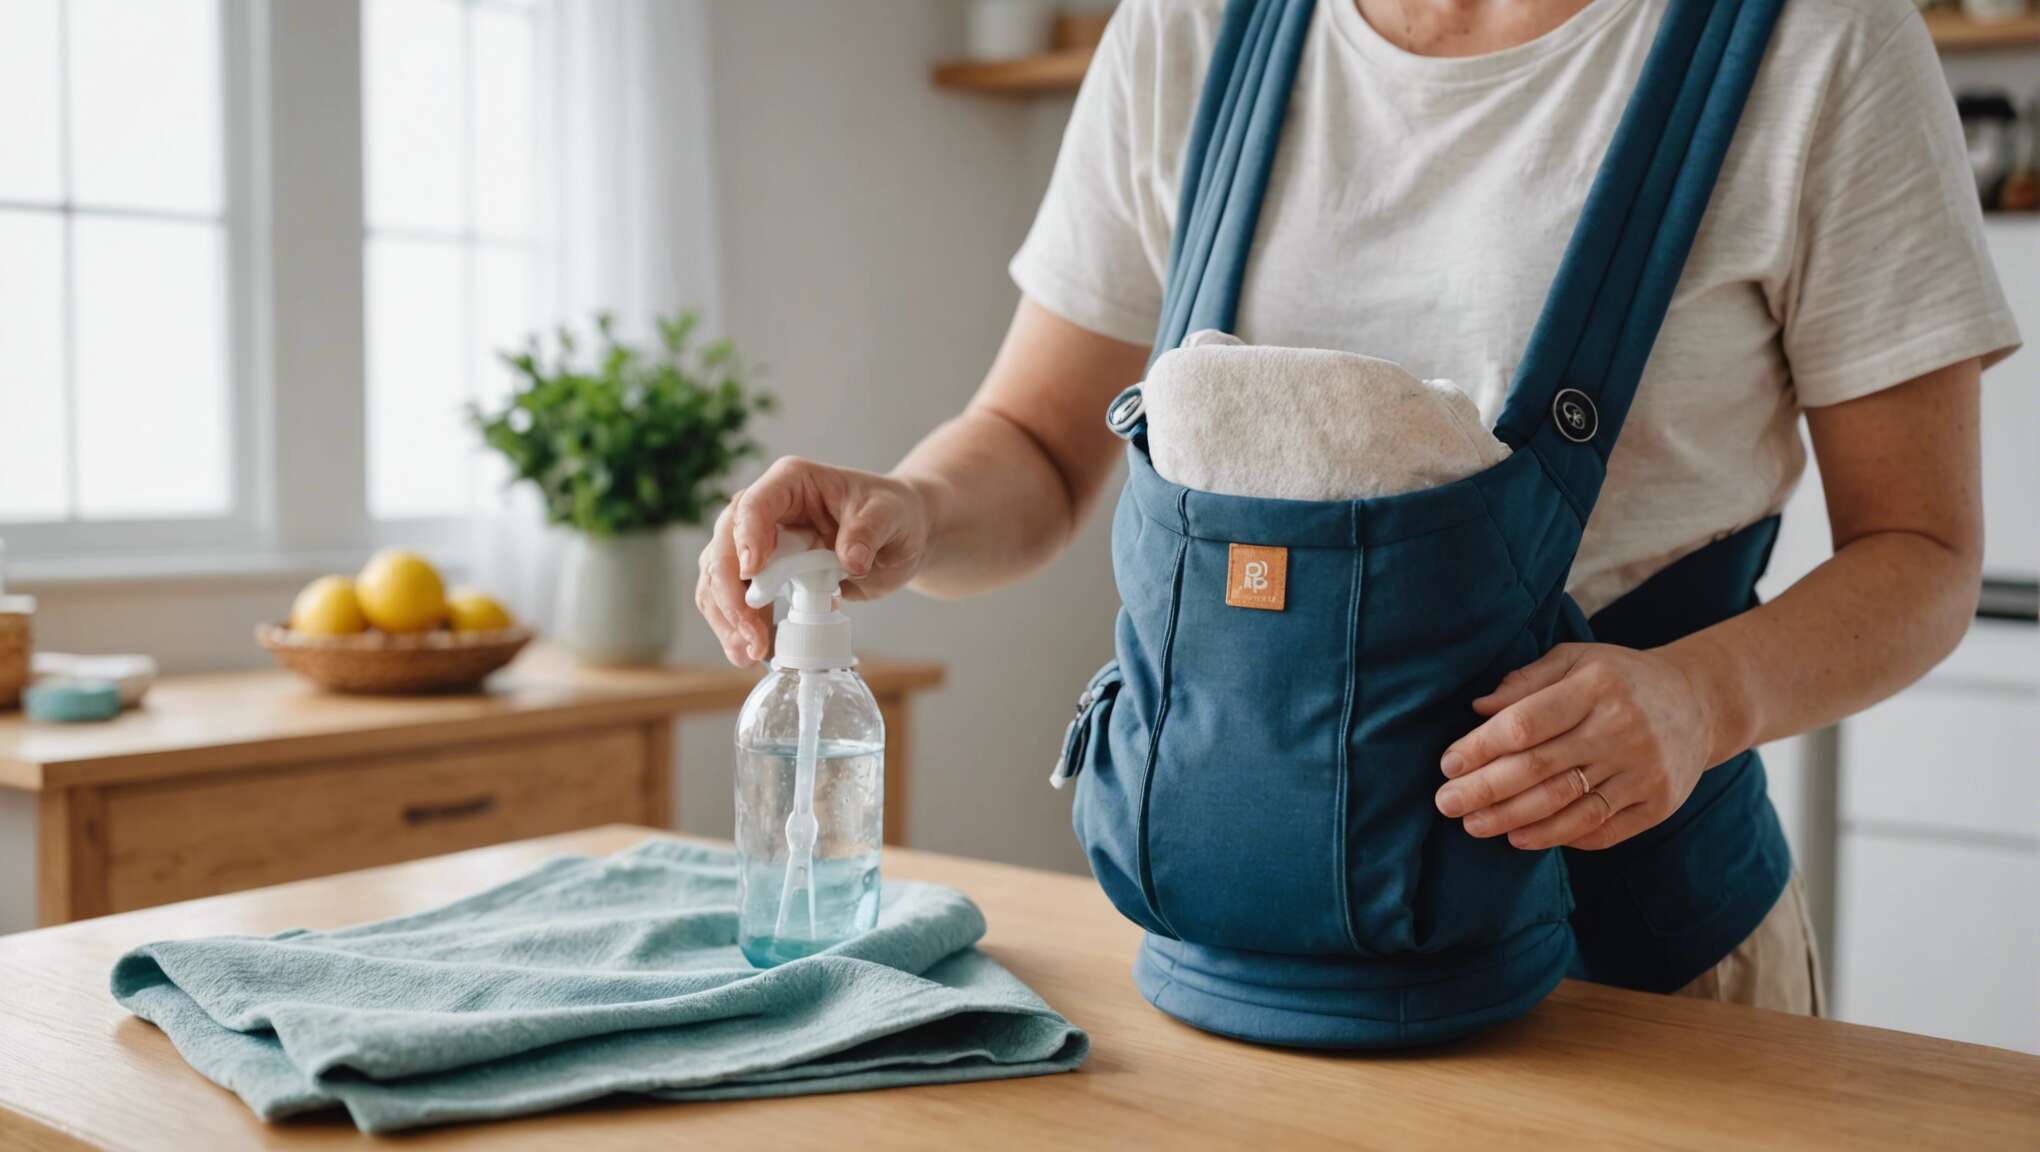 Les étapes clés pour un lavage en douceur de votre porte-bébé